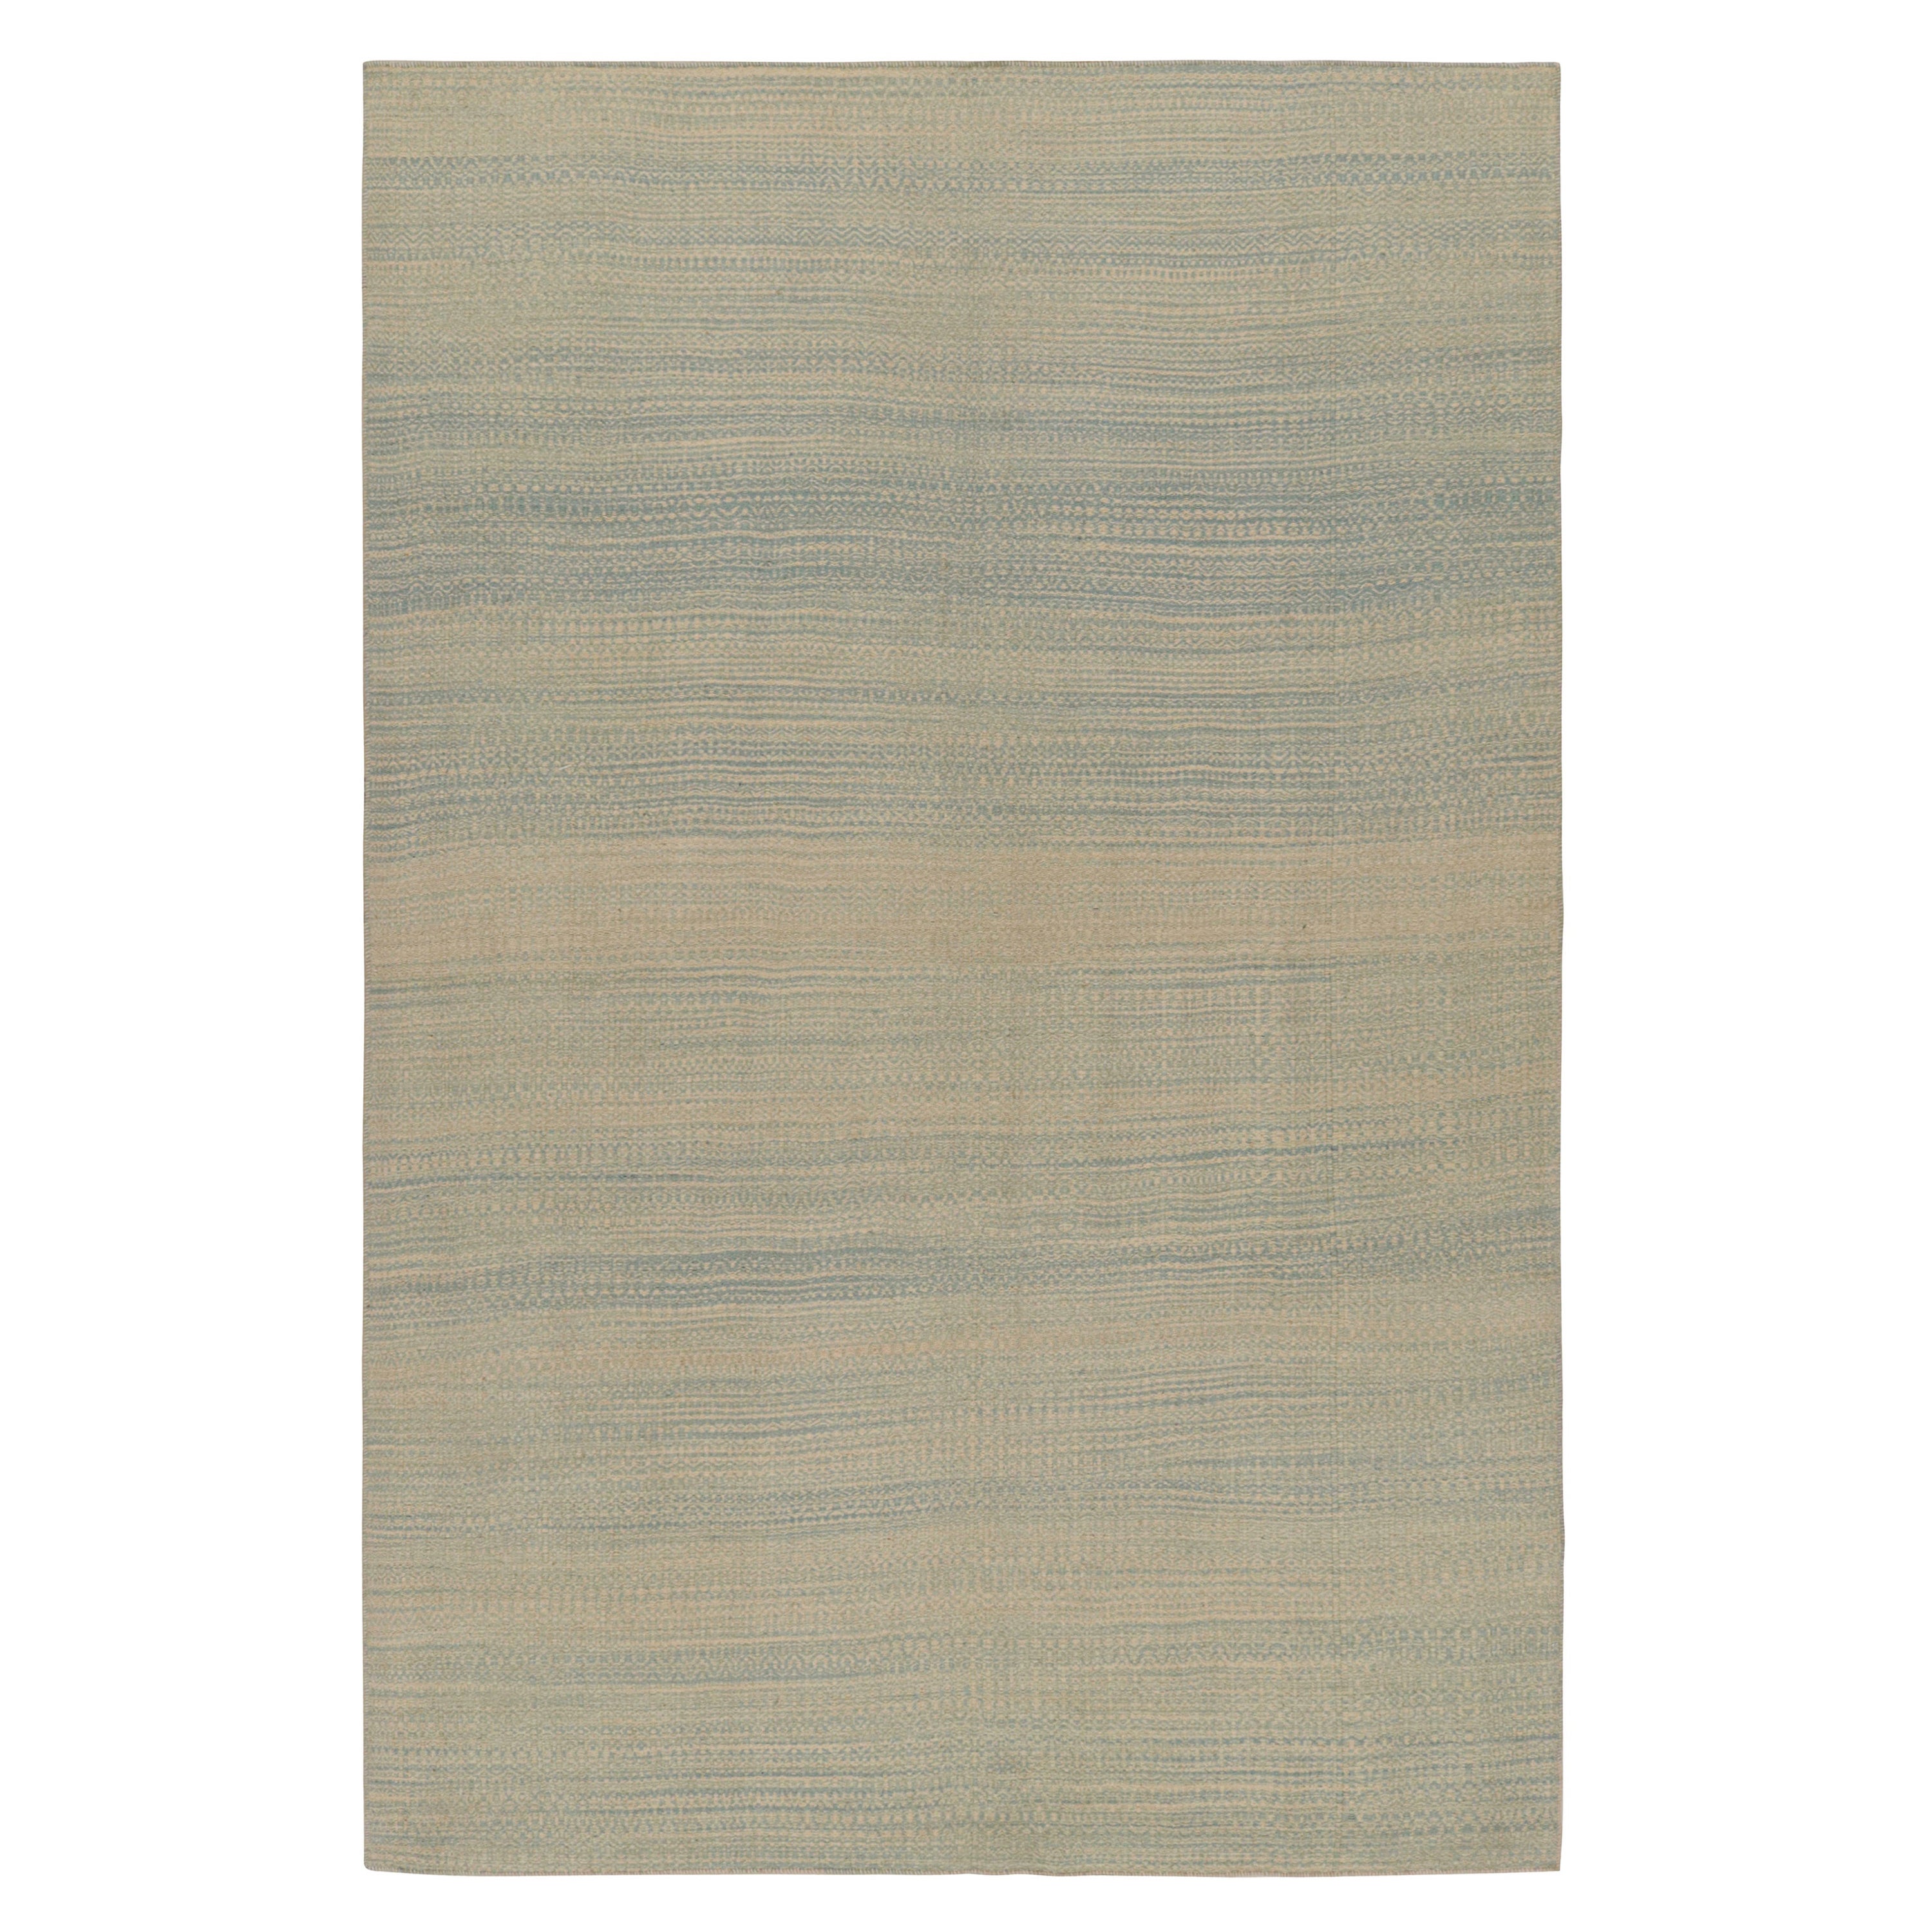 Rug & Kilim’s Modern Kilim rug in Blue and Beige Stripes and Striae